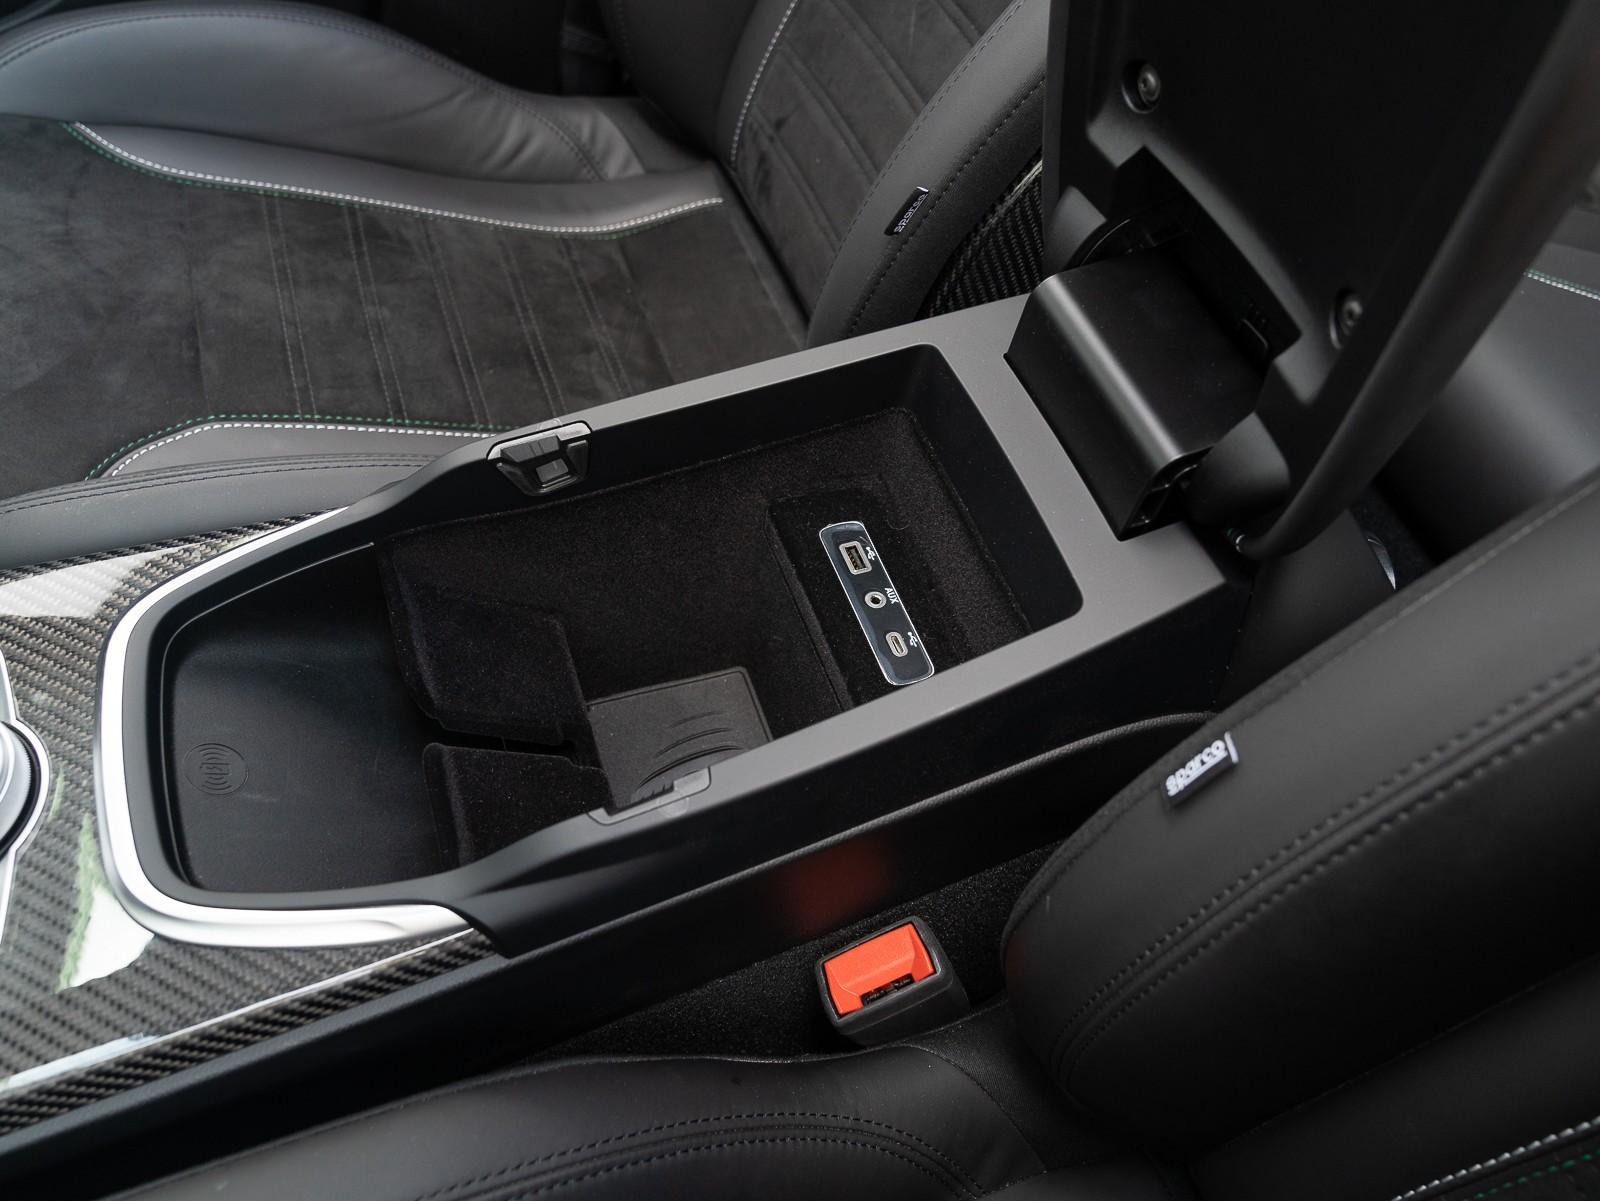 TAPTES® Linen Seat Cushion for Tesla Model 3 – TAPTES -1000+ Tesla